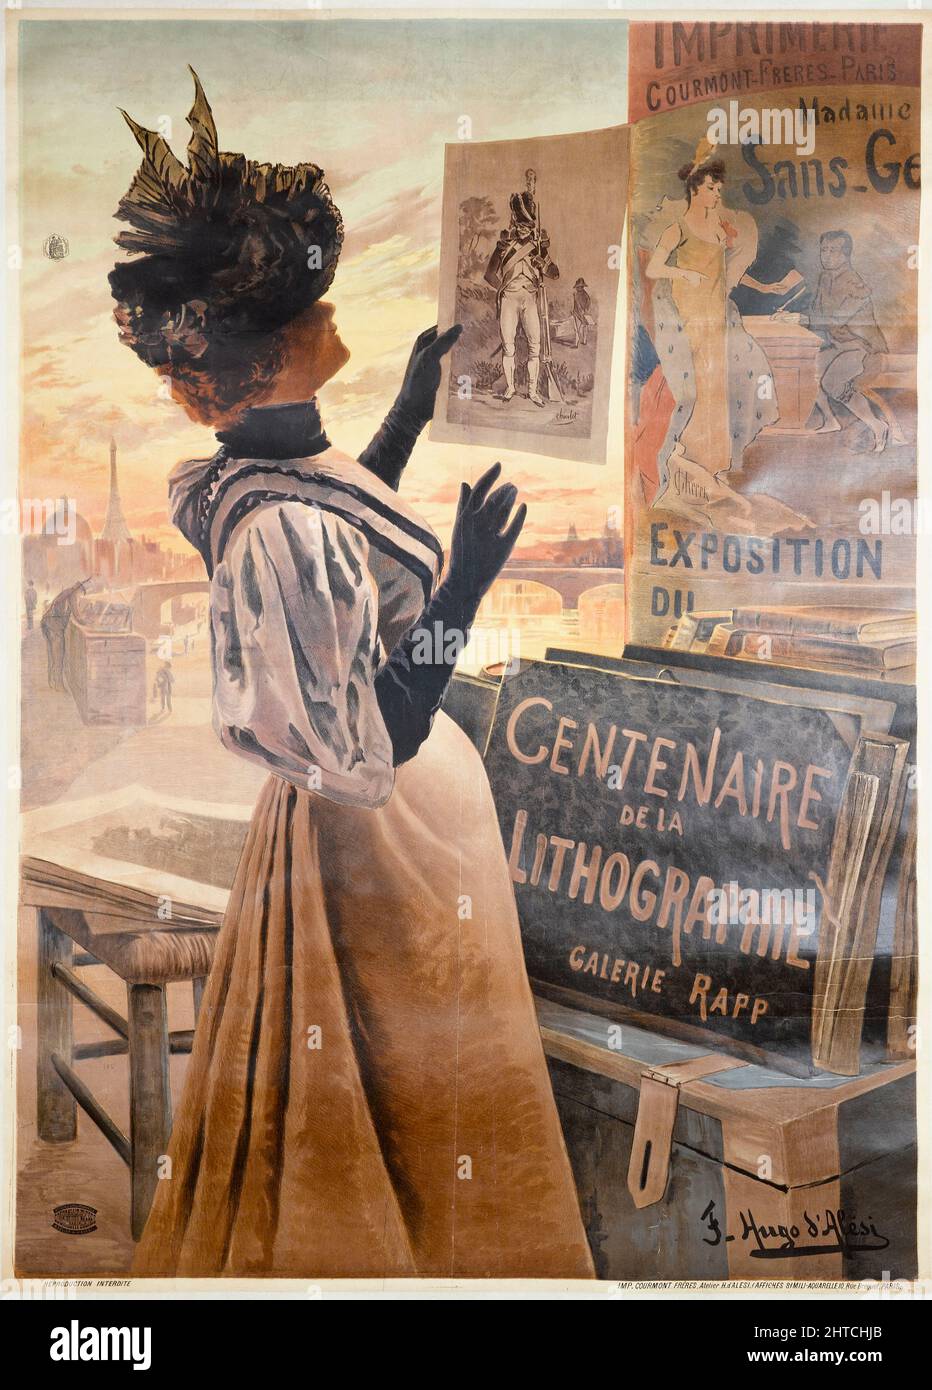 Centenaire de la Lithographie, Galerie Rapp, 1895. Private Collection. Stock Photo